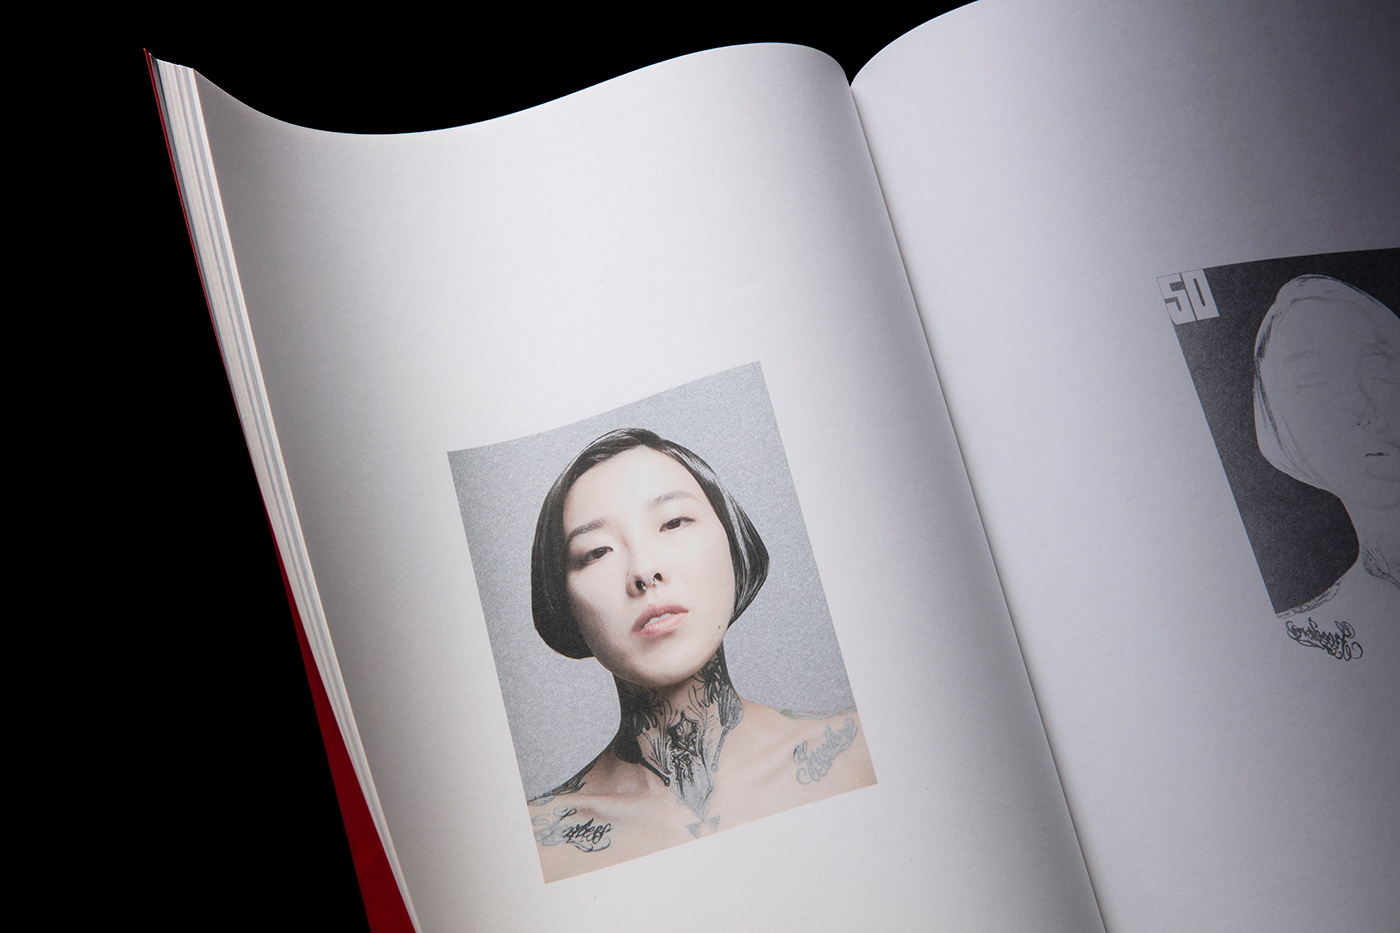 見本生物 Po Tsang Ho prints book design graphic design  hairstyle Fashion  portfolio sculpture SampleAnimal